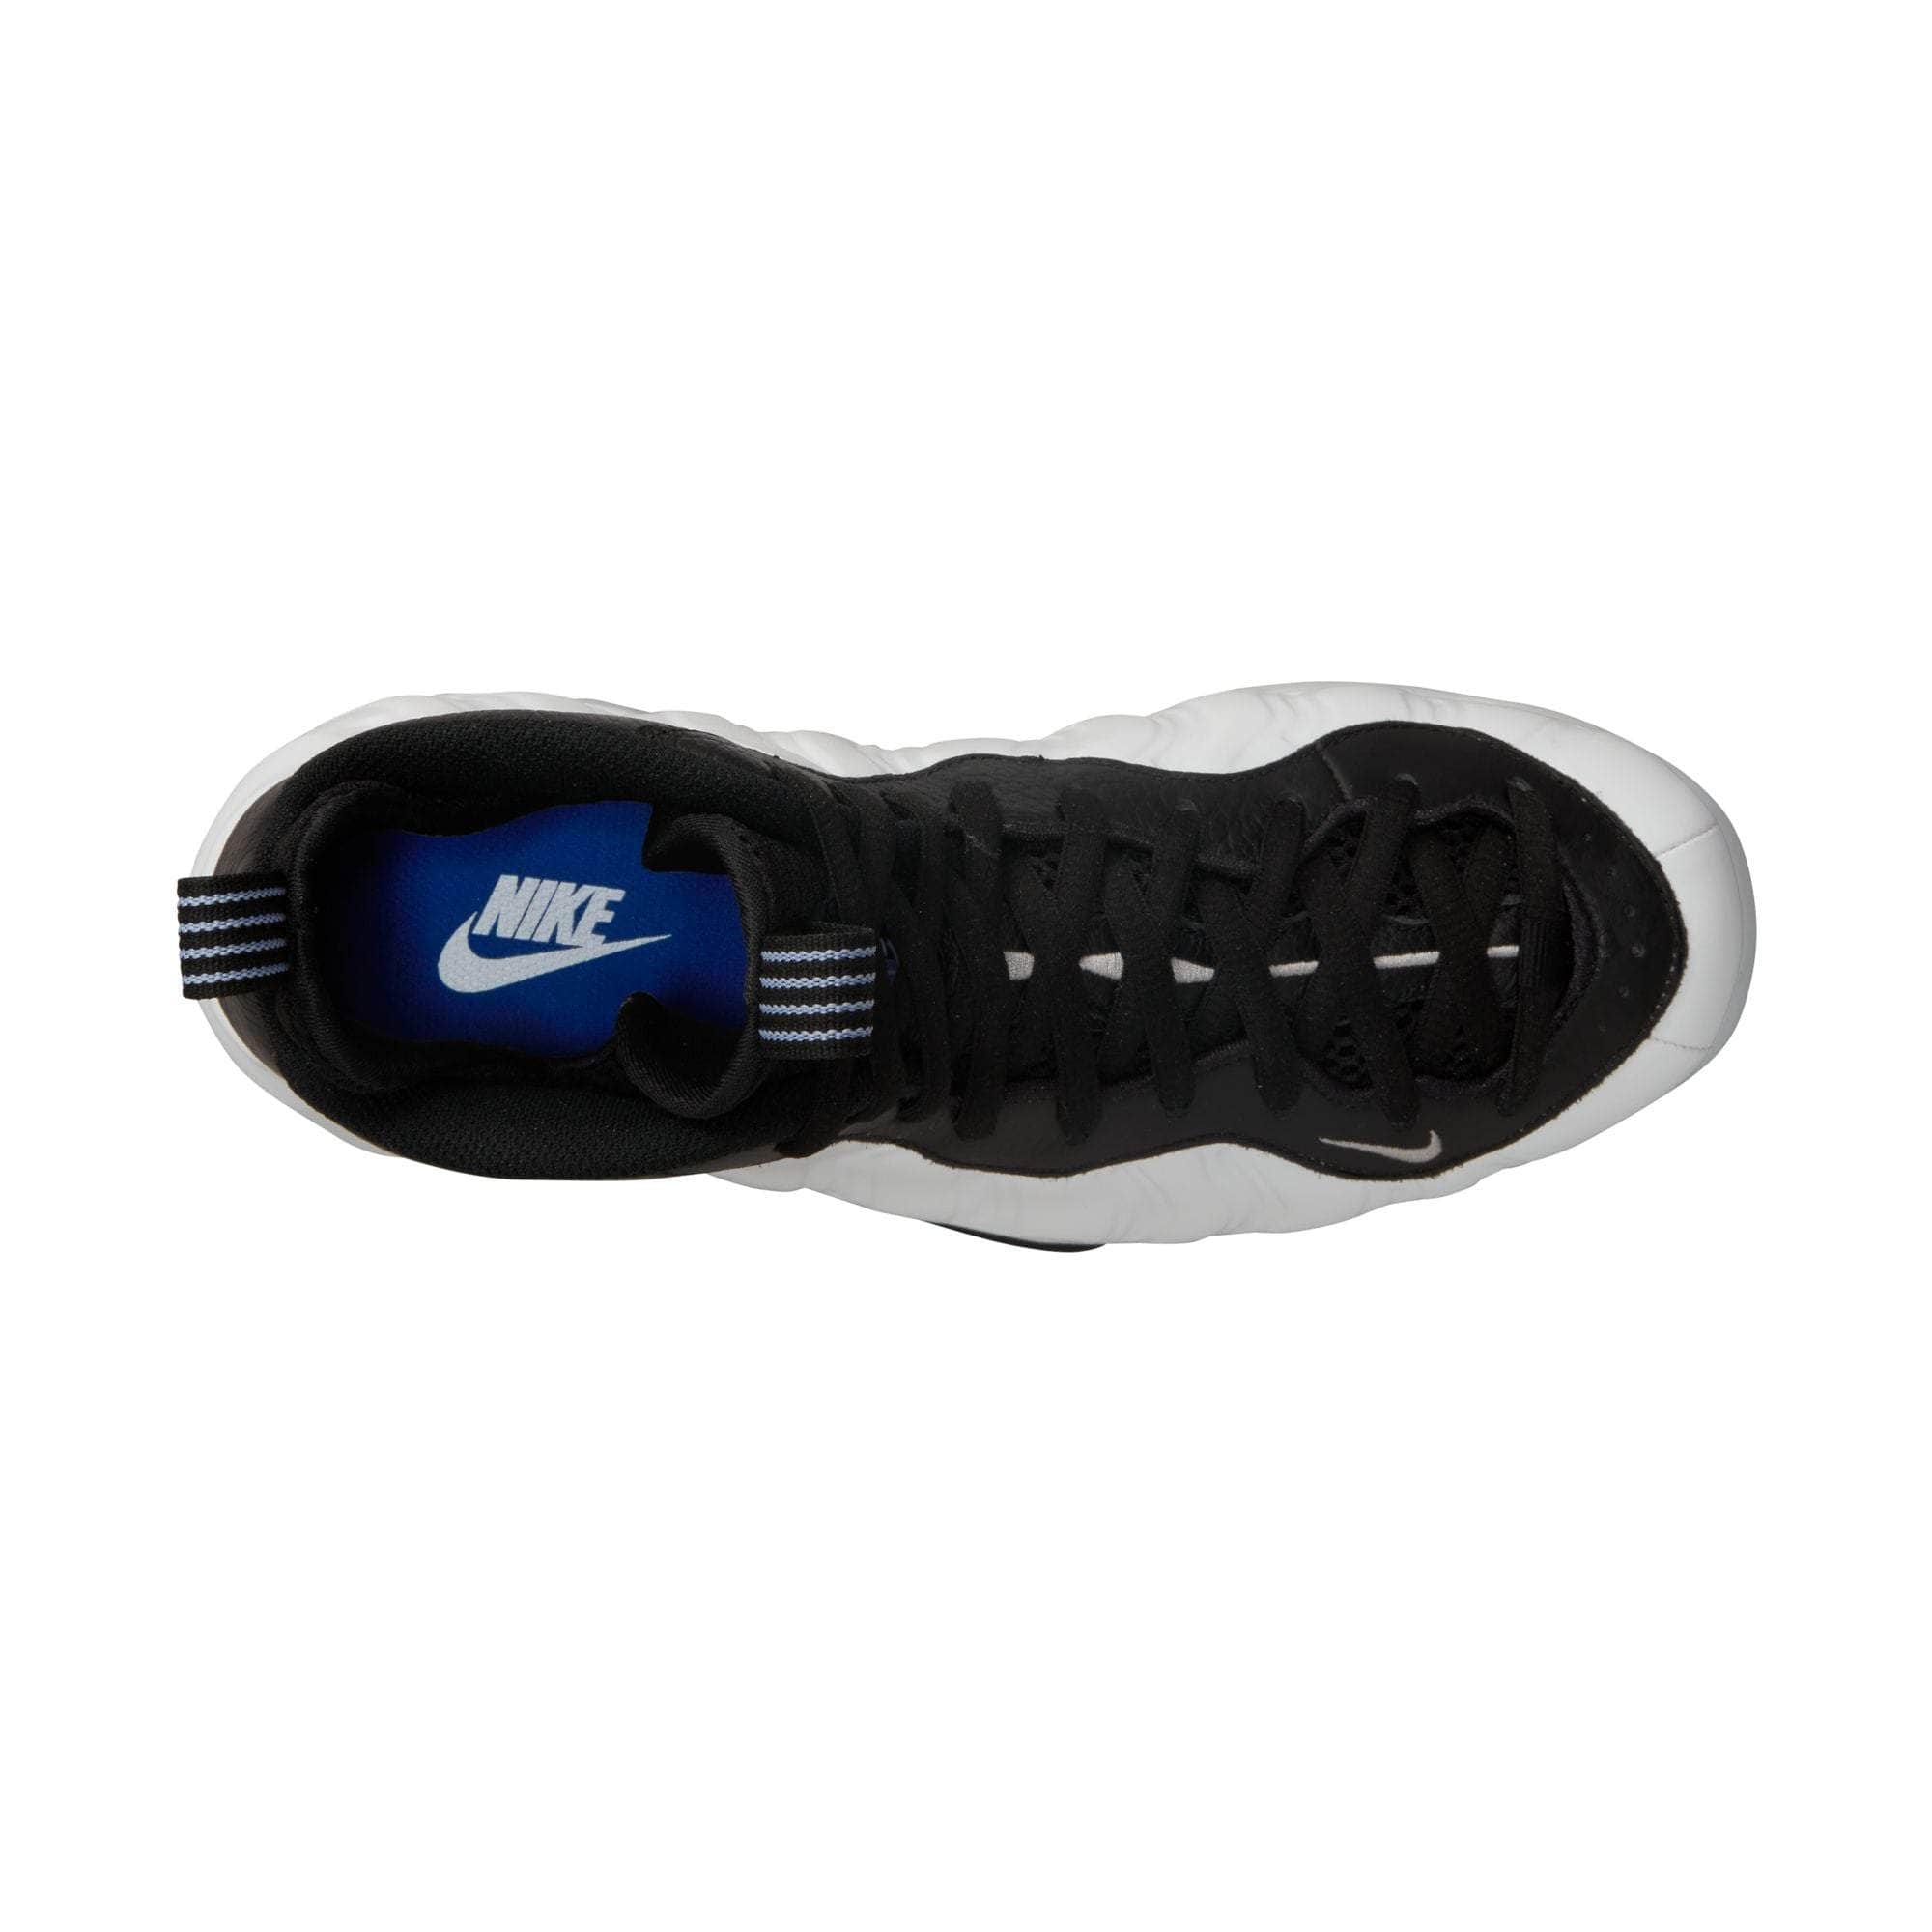 NIKE FOOTWEAR Nike Air Foamposite One Penny PE - Men's